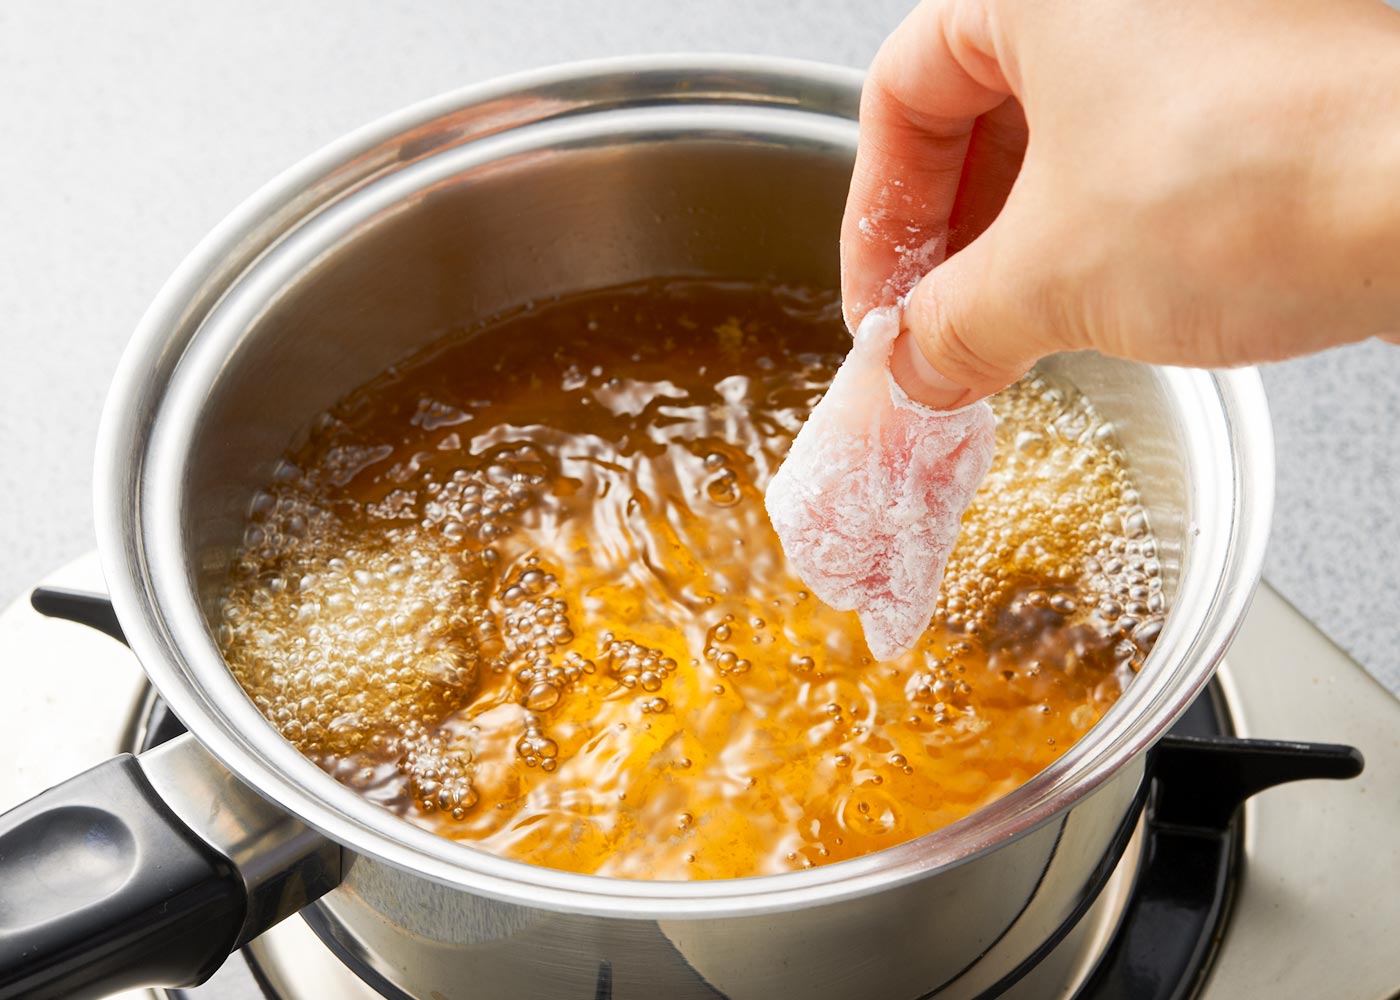 １つずつ取り出して、かたくり粉をまぶし、180℃の揚げ油に入れる。両面、白く粉が吹くまで４分間揚げる。